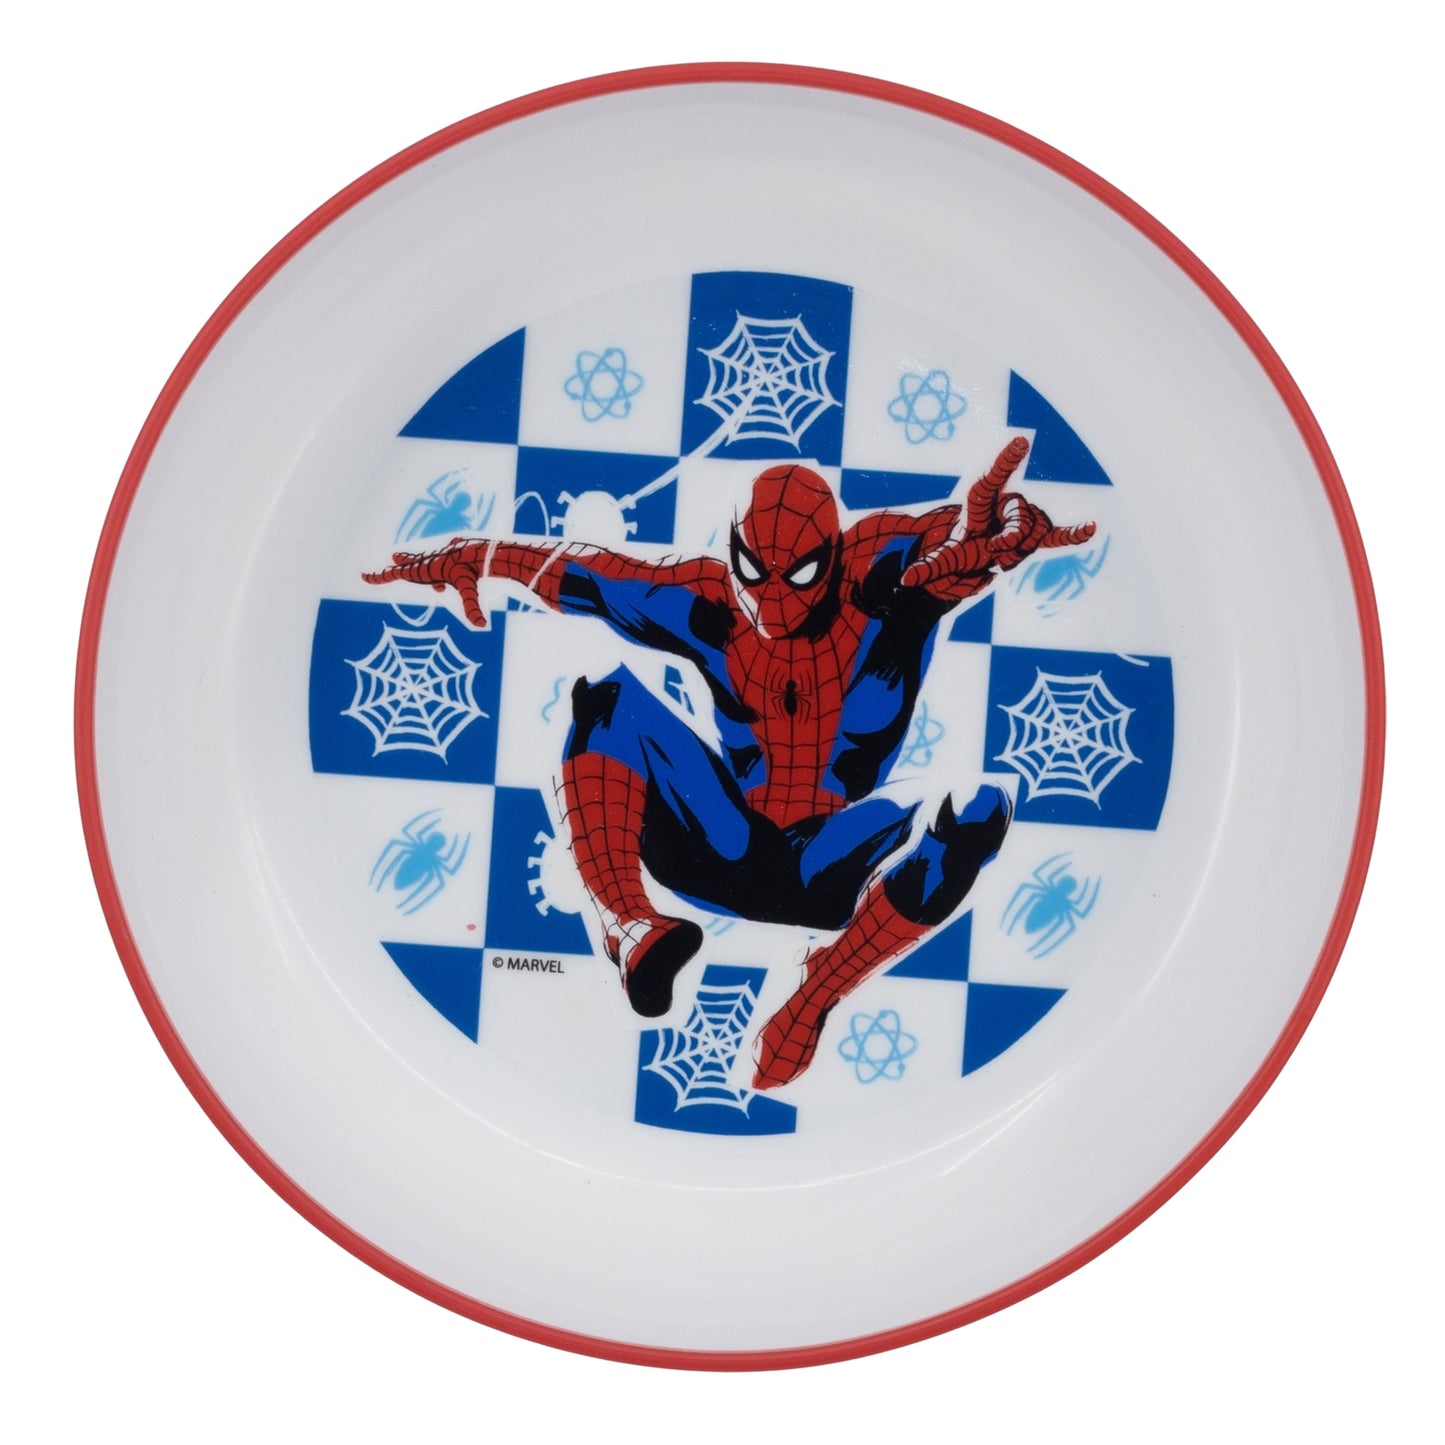 Marvel Spiderman Kinder Geschirr-Set 3 teilig Becher Teller Schüssel